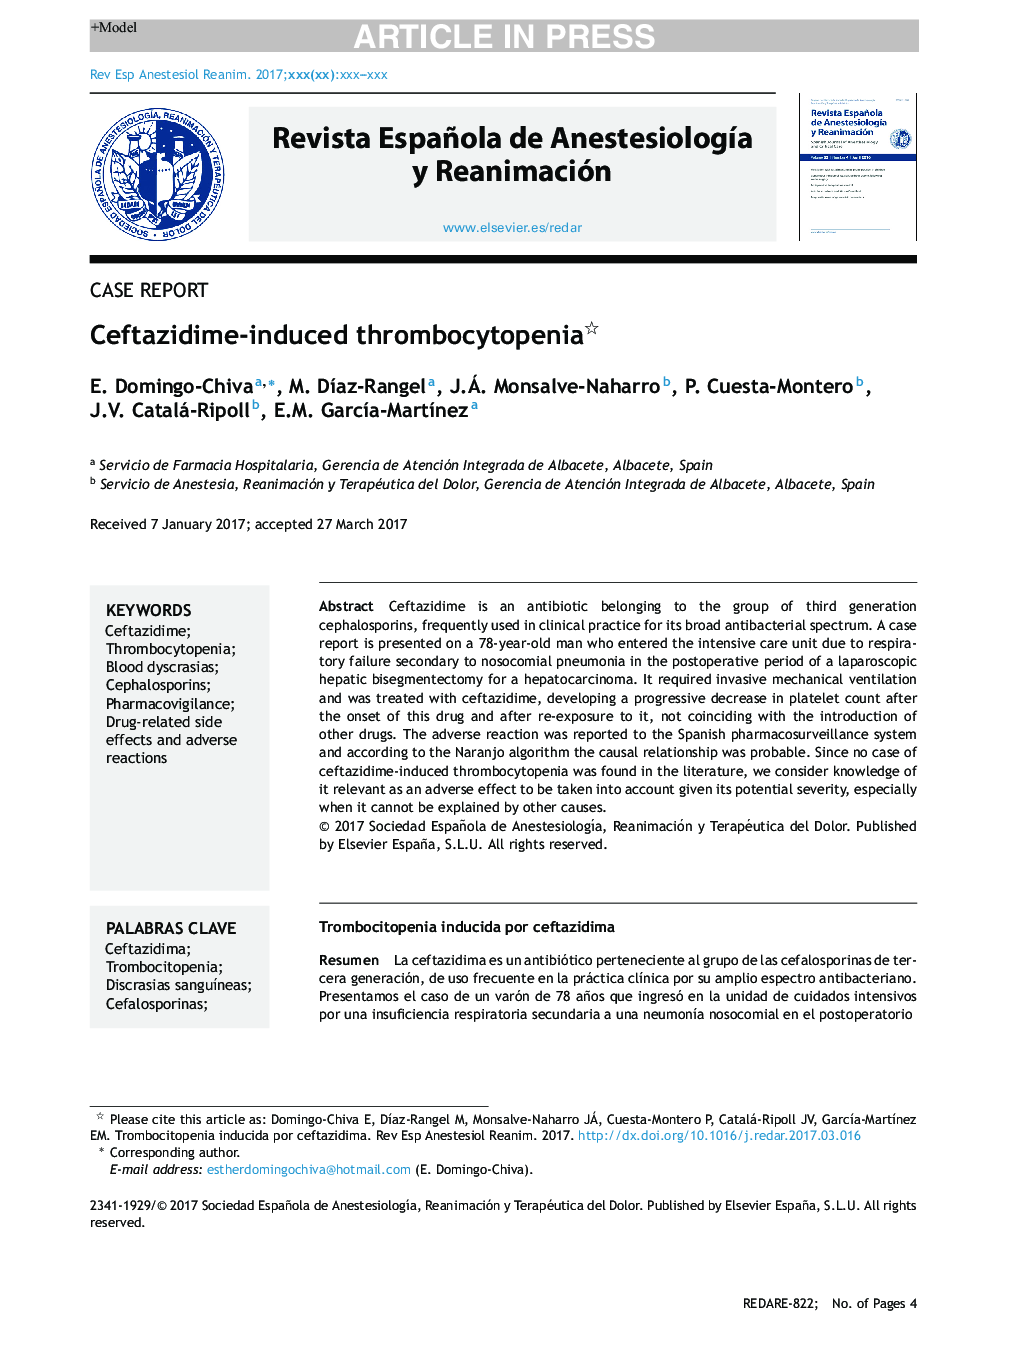 Ceftazidime-induced thrombocytopenia